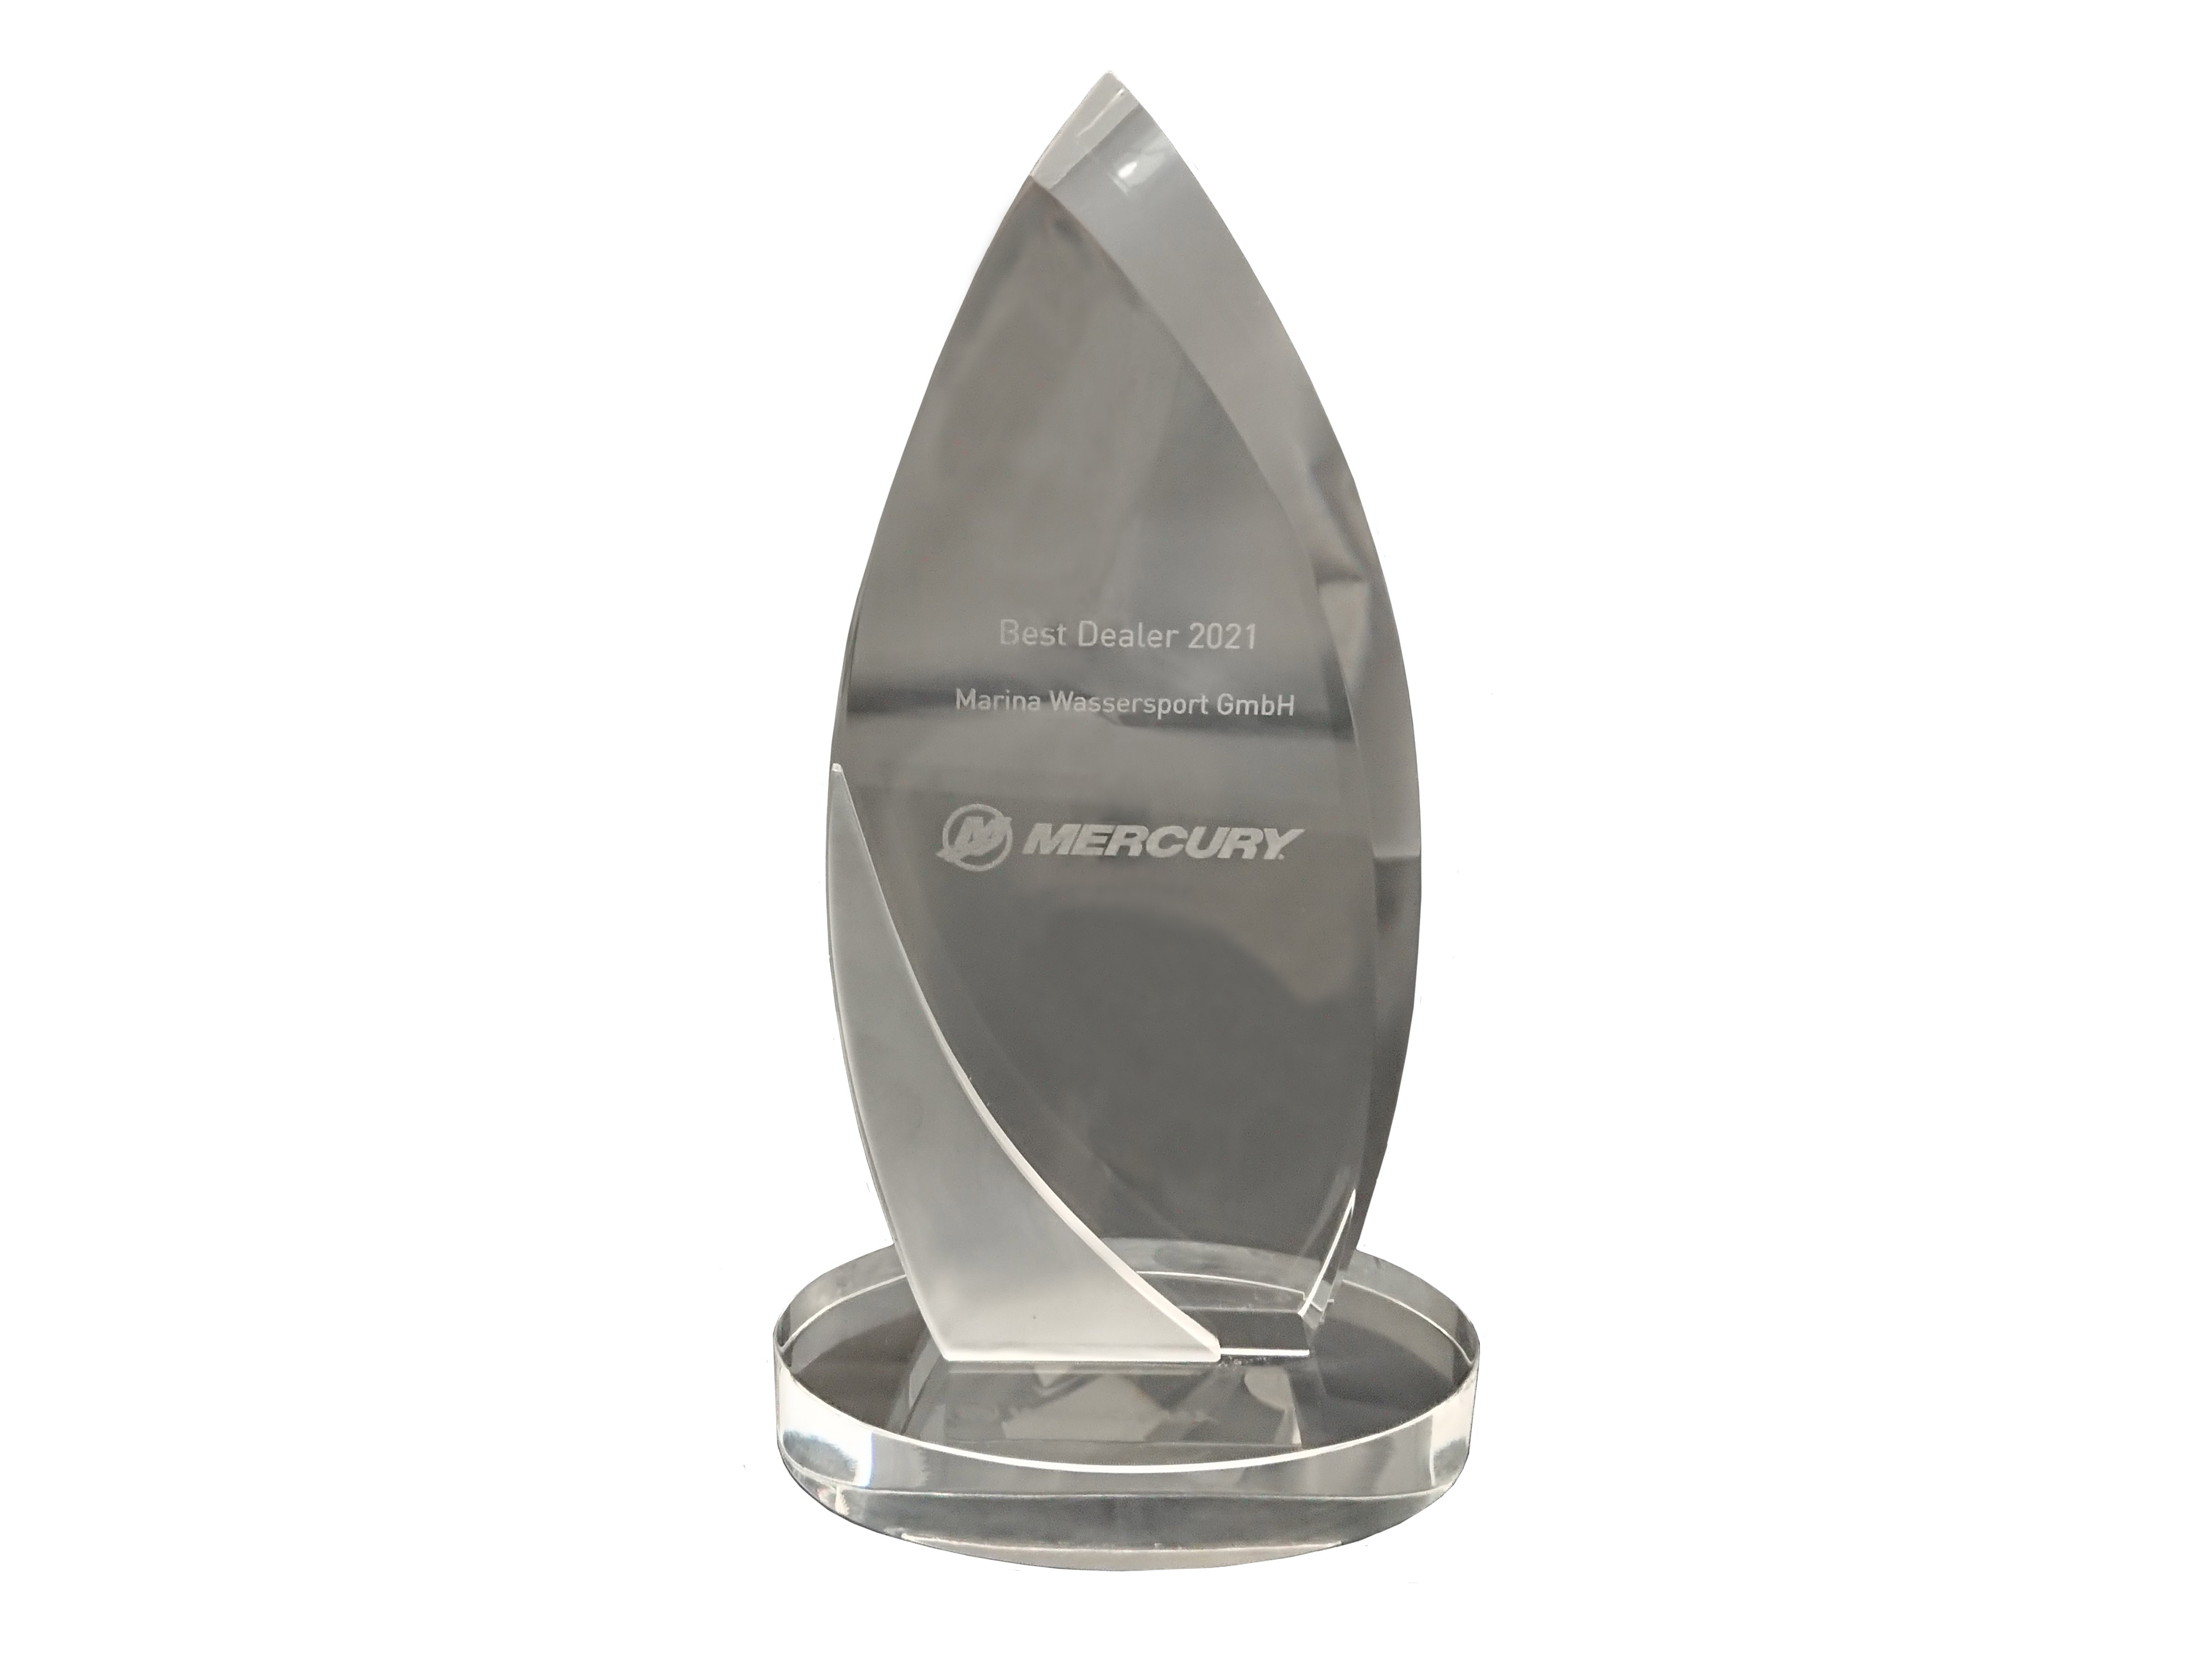 mercury award best dealer 2021